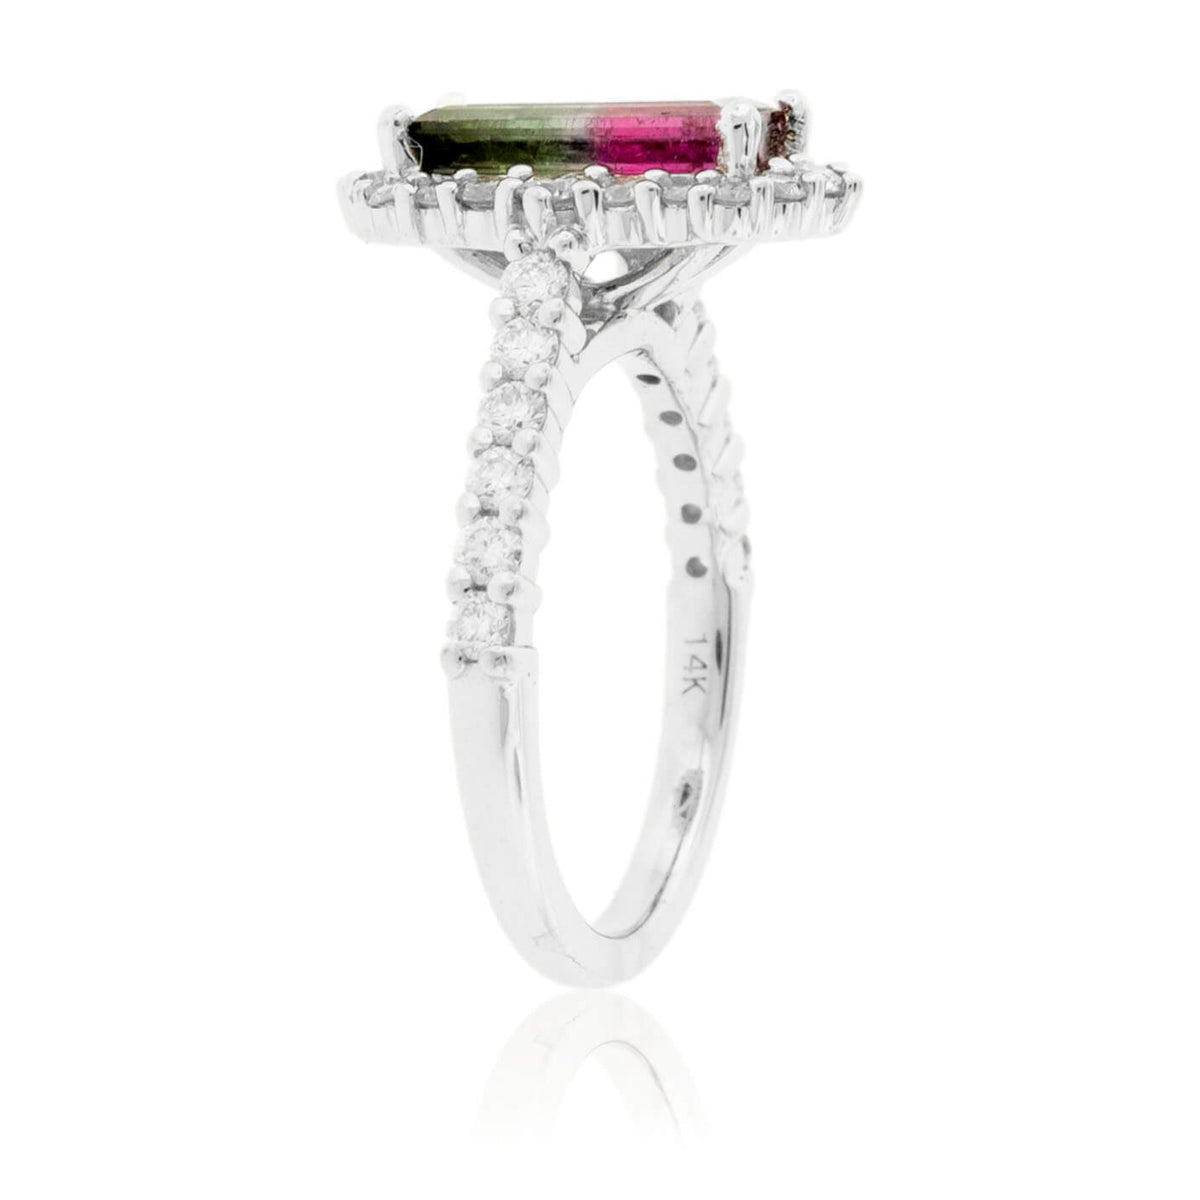 Watermelon Tourmaline & Diamond Halo Ring - Park City Jewelers